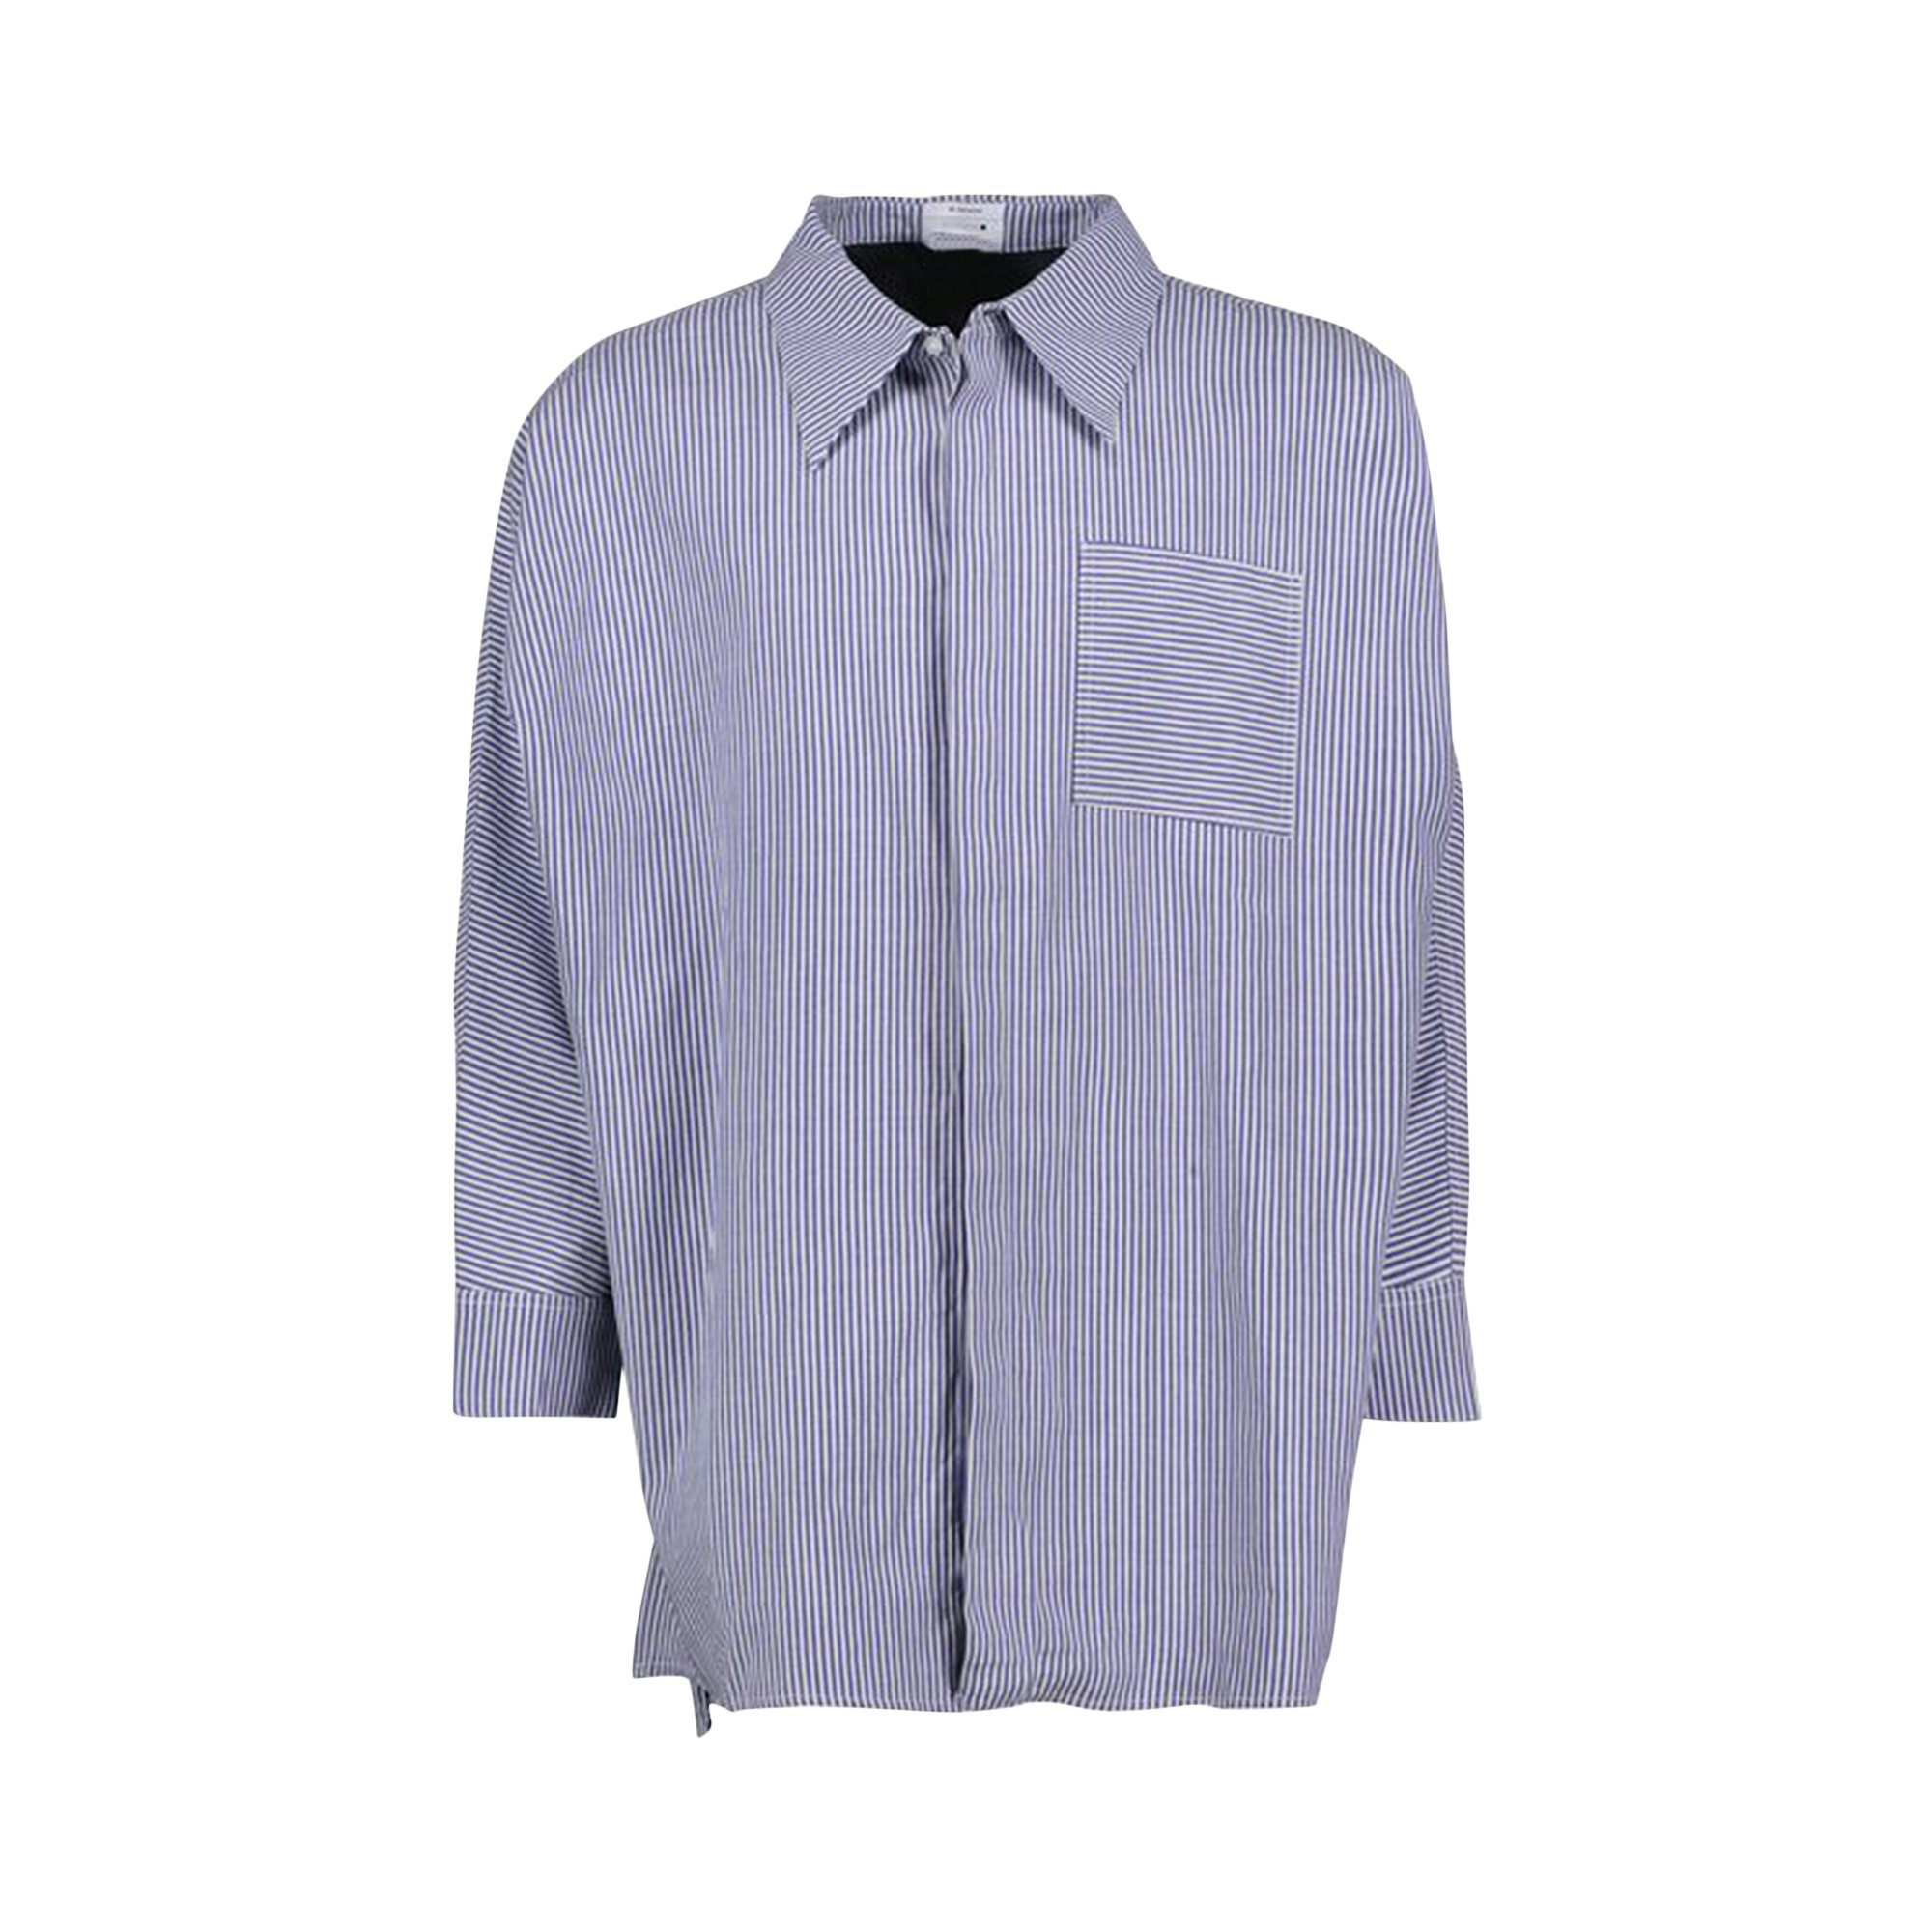 Рабочая рубашка Mr. Saturday, цвет: синий/белый